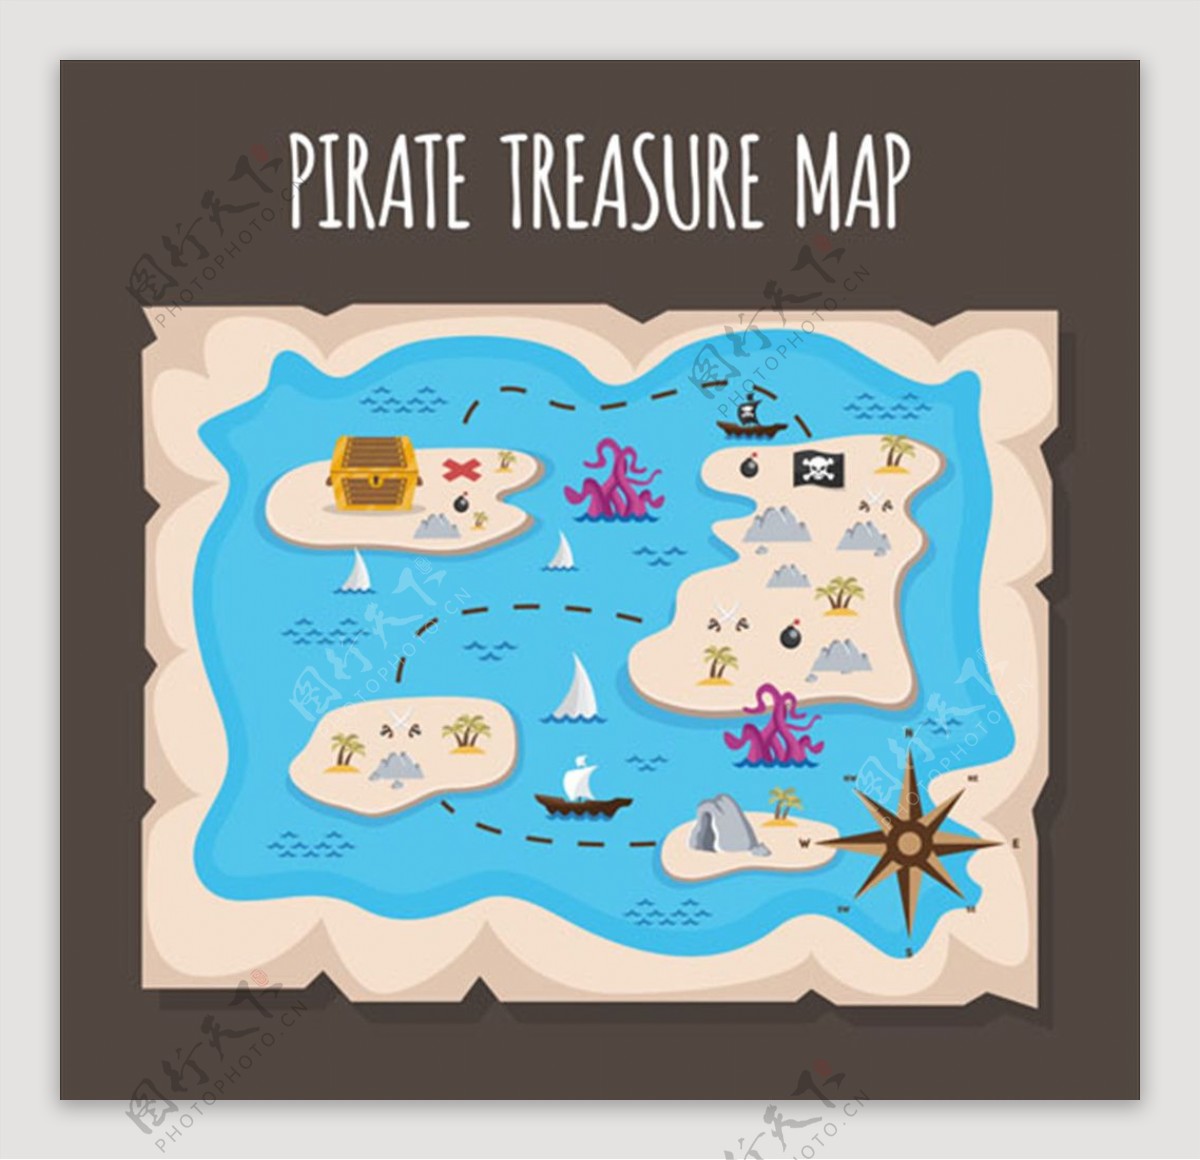 有几个岛屿的海盗宝藏地形图